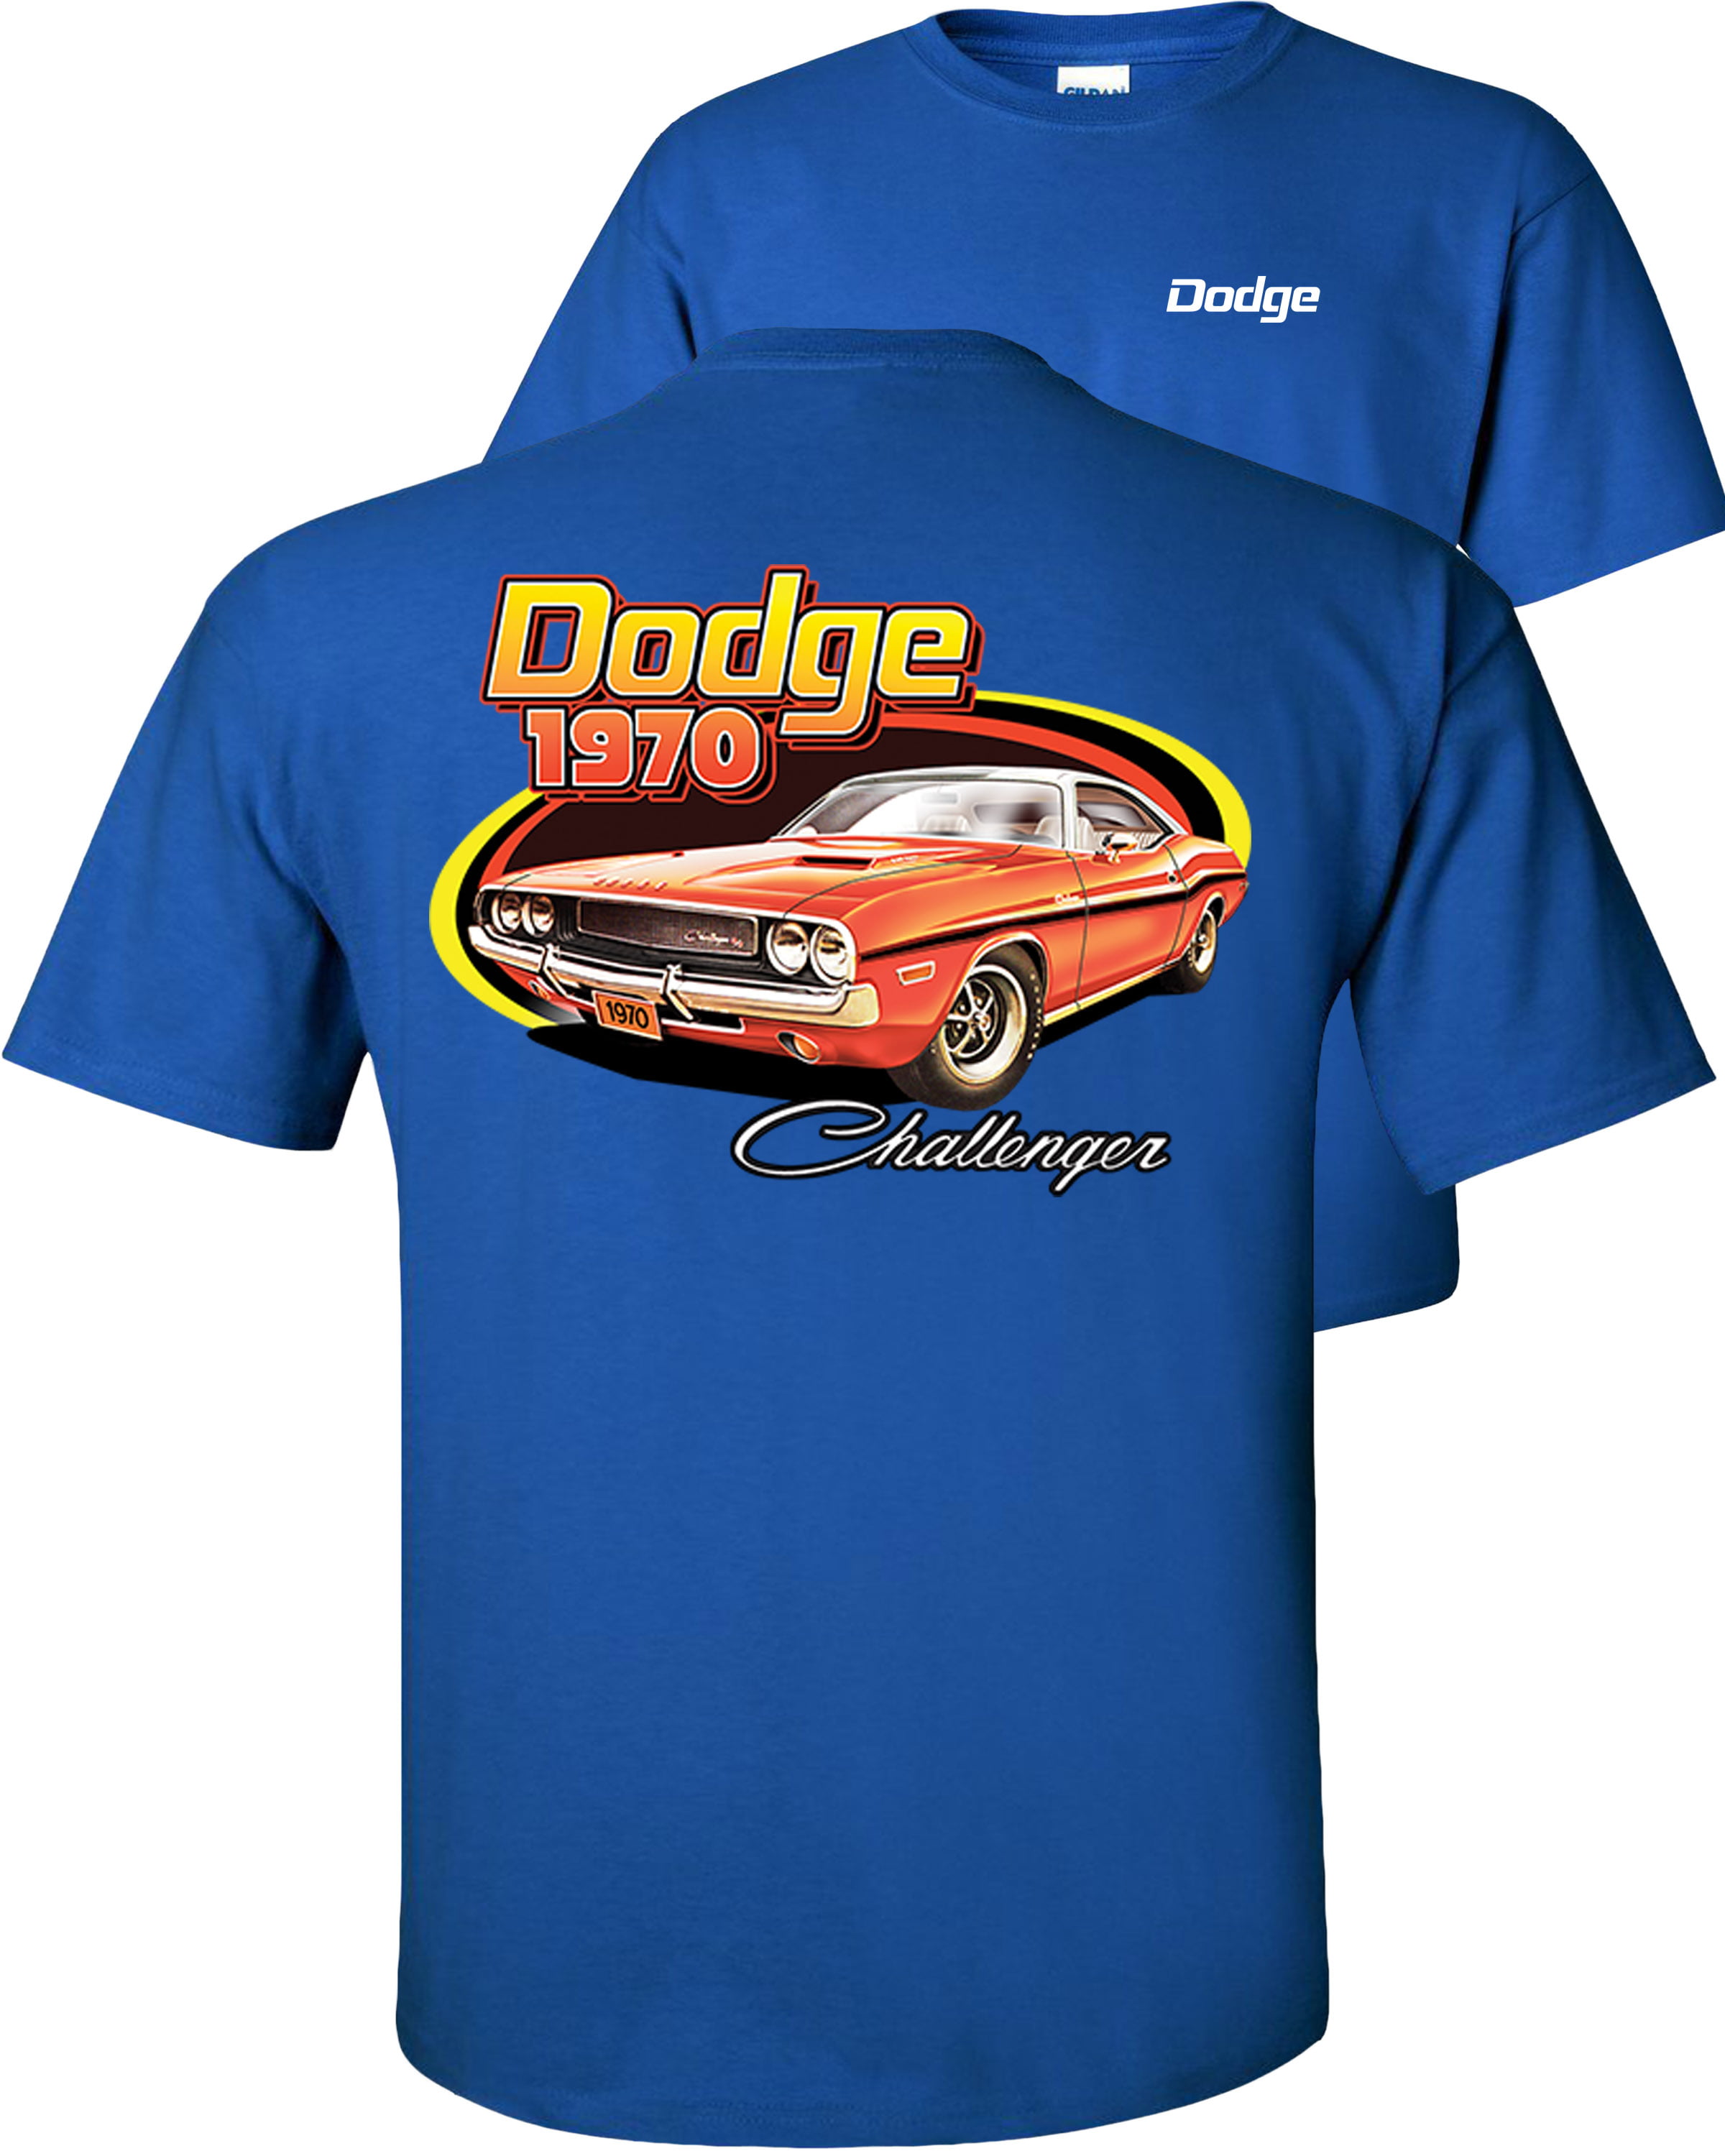 Dodge '69 Charger Vintage Mopar Muscle Car T-shirt 100% Cotton Small to XXXL 